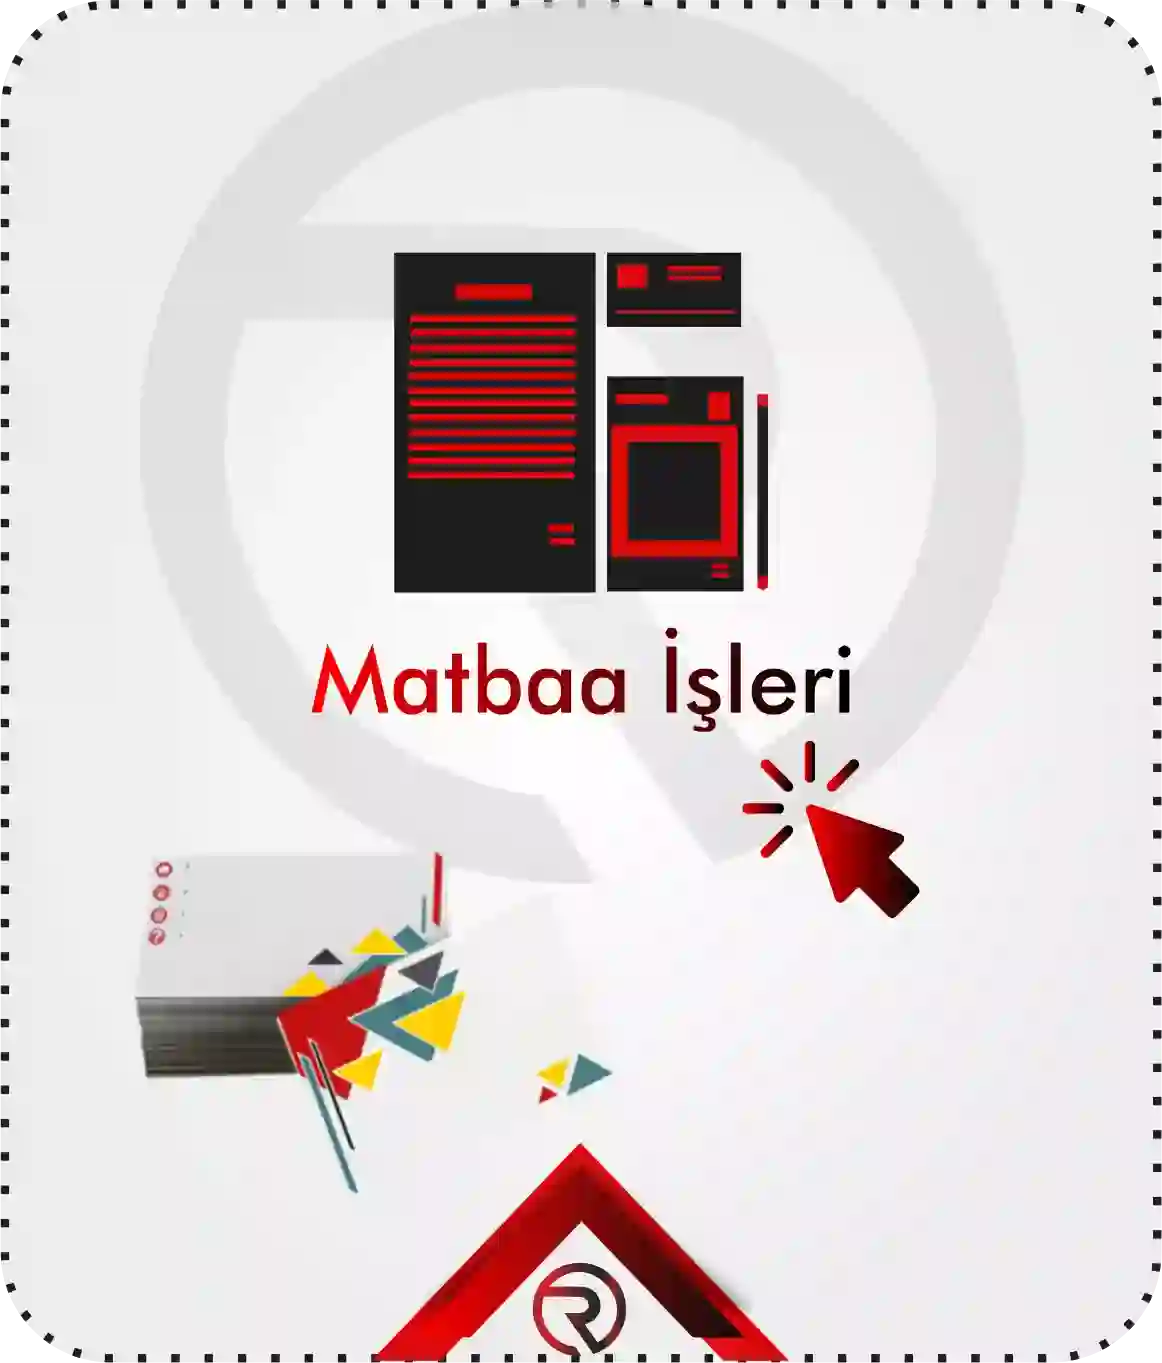 Ankara Red Reklam Matbaa İşleri Kartvizit broşür kurumsal kimlik